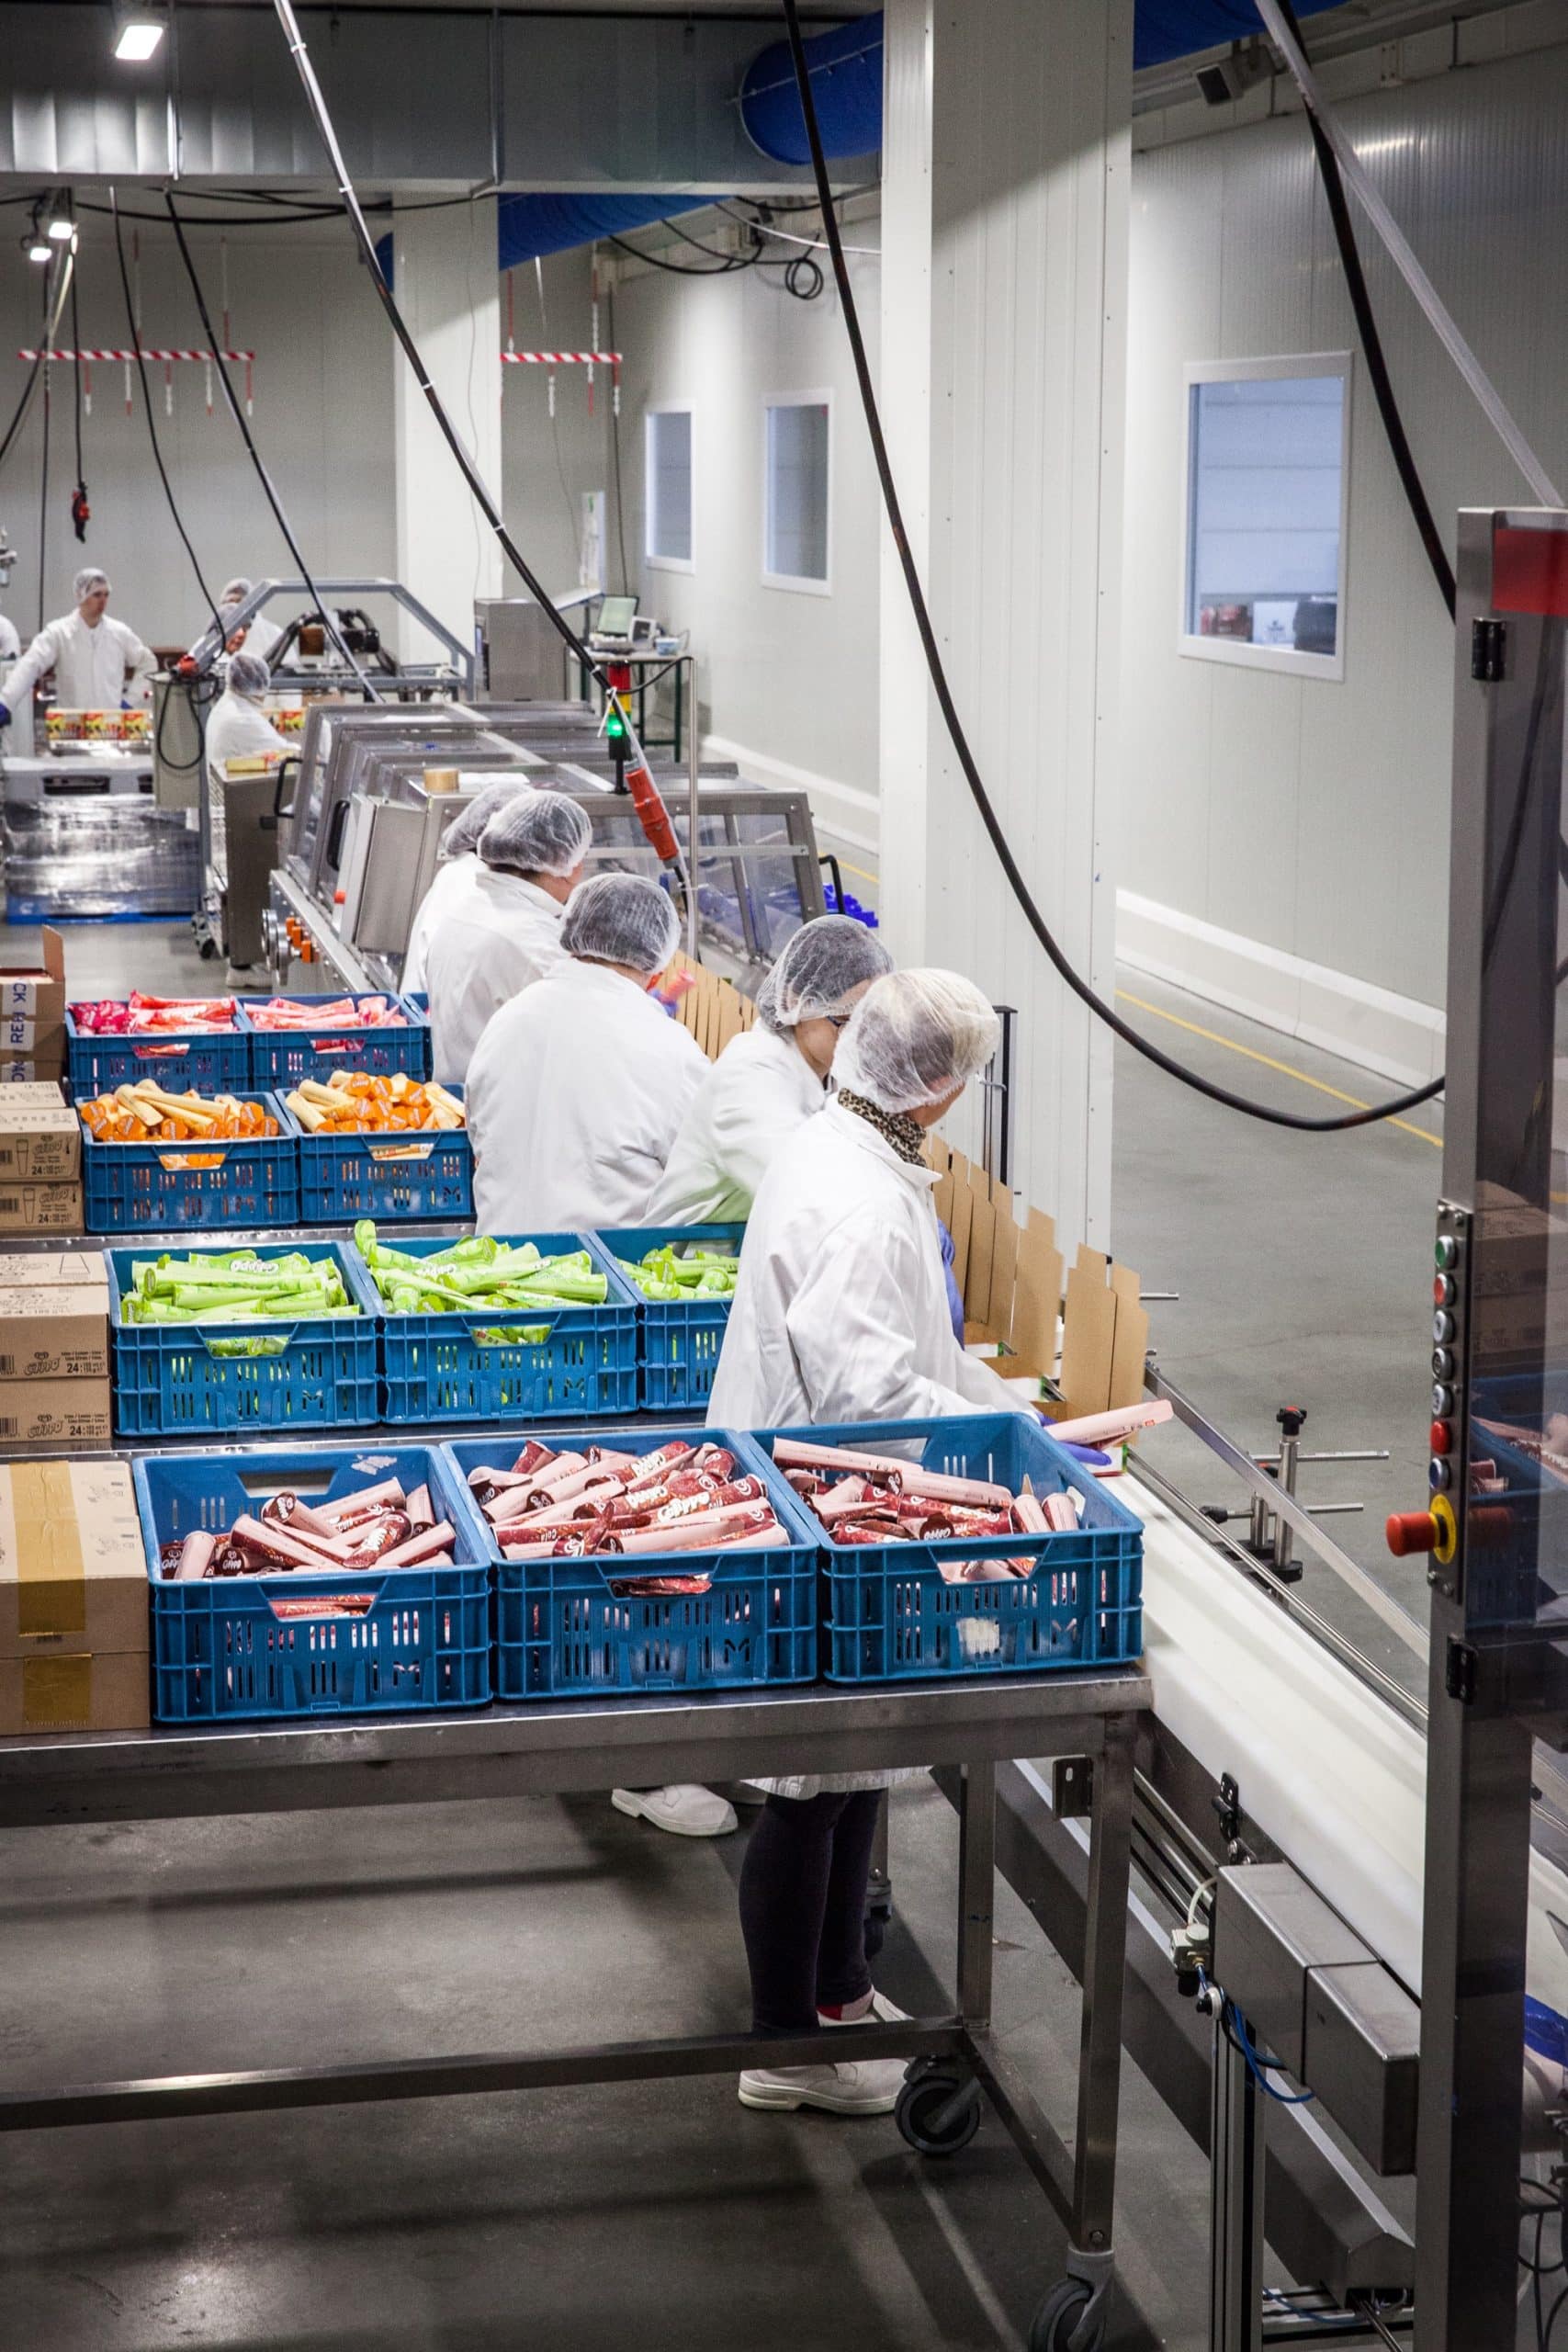 Nuestras cintas transportadoras para la industria alimentaria en acción en Calippo. Varias personas trabajan junto a ella.